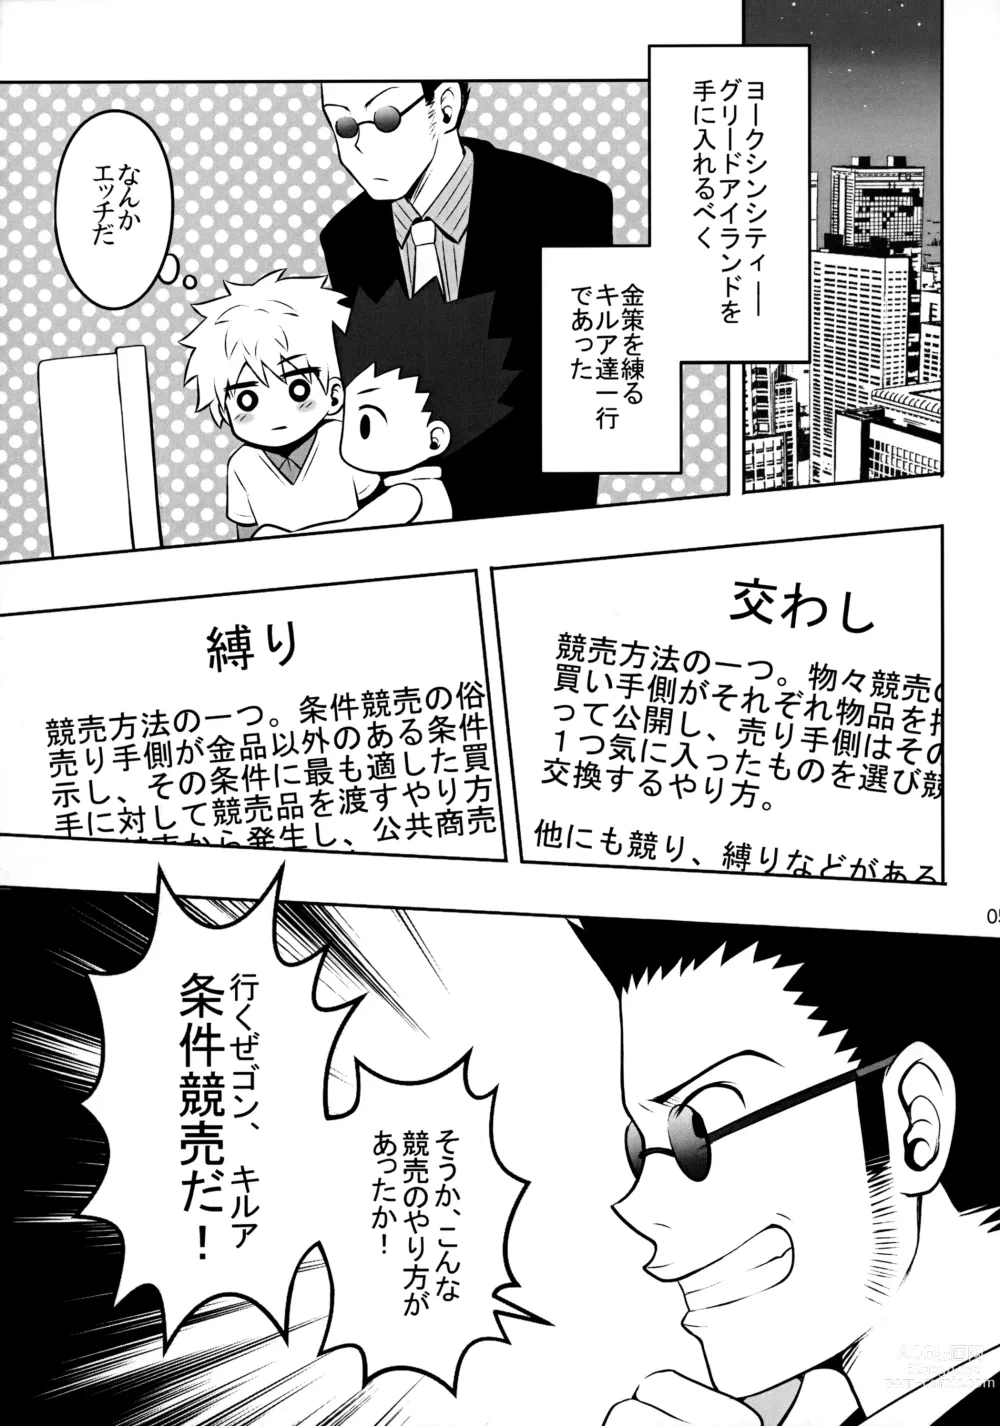 Page 4 of doujinshi Sannan ga Ecchi na Jouken Kyoubai ni Deru Ohanashi.